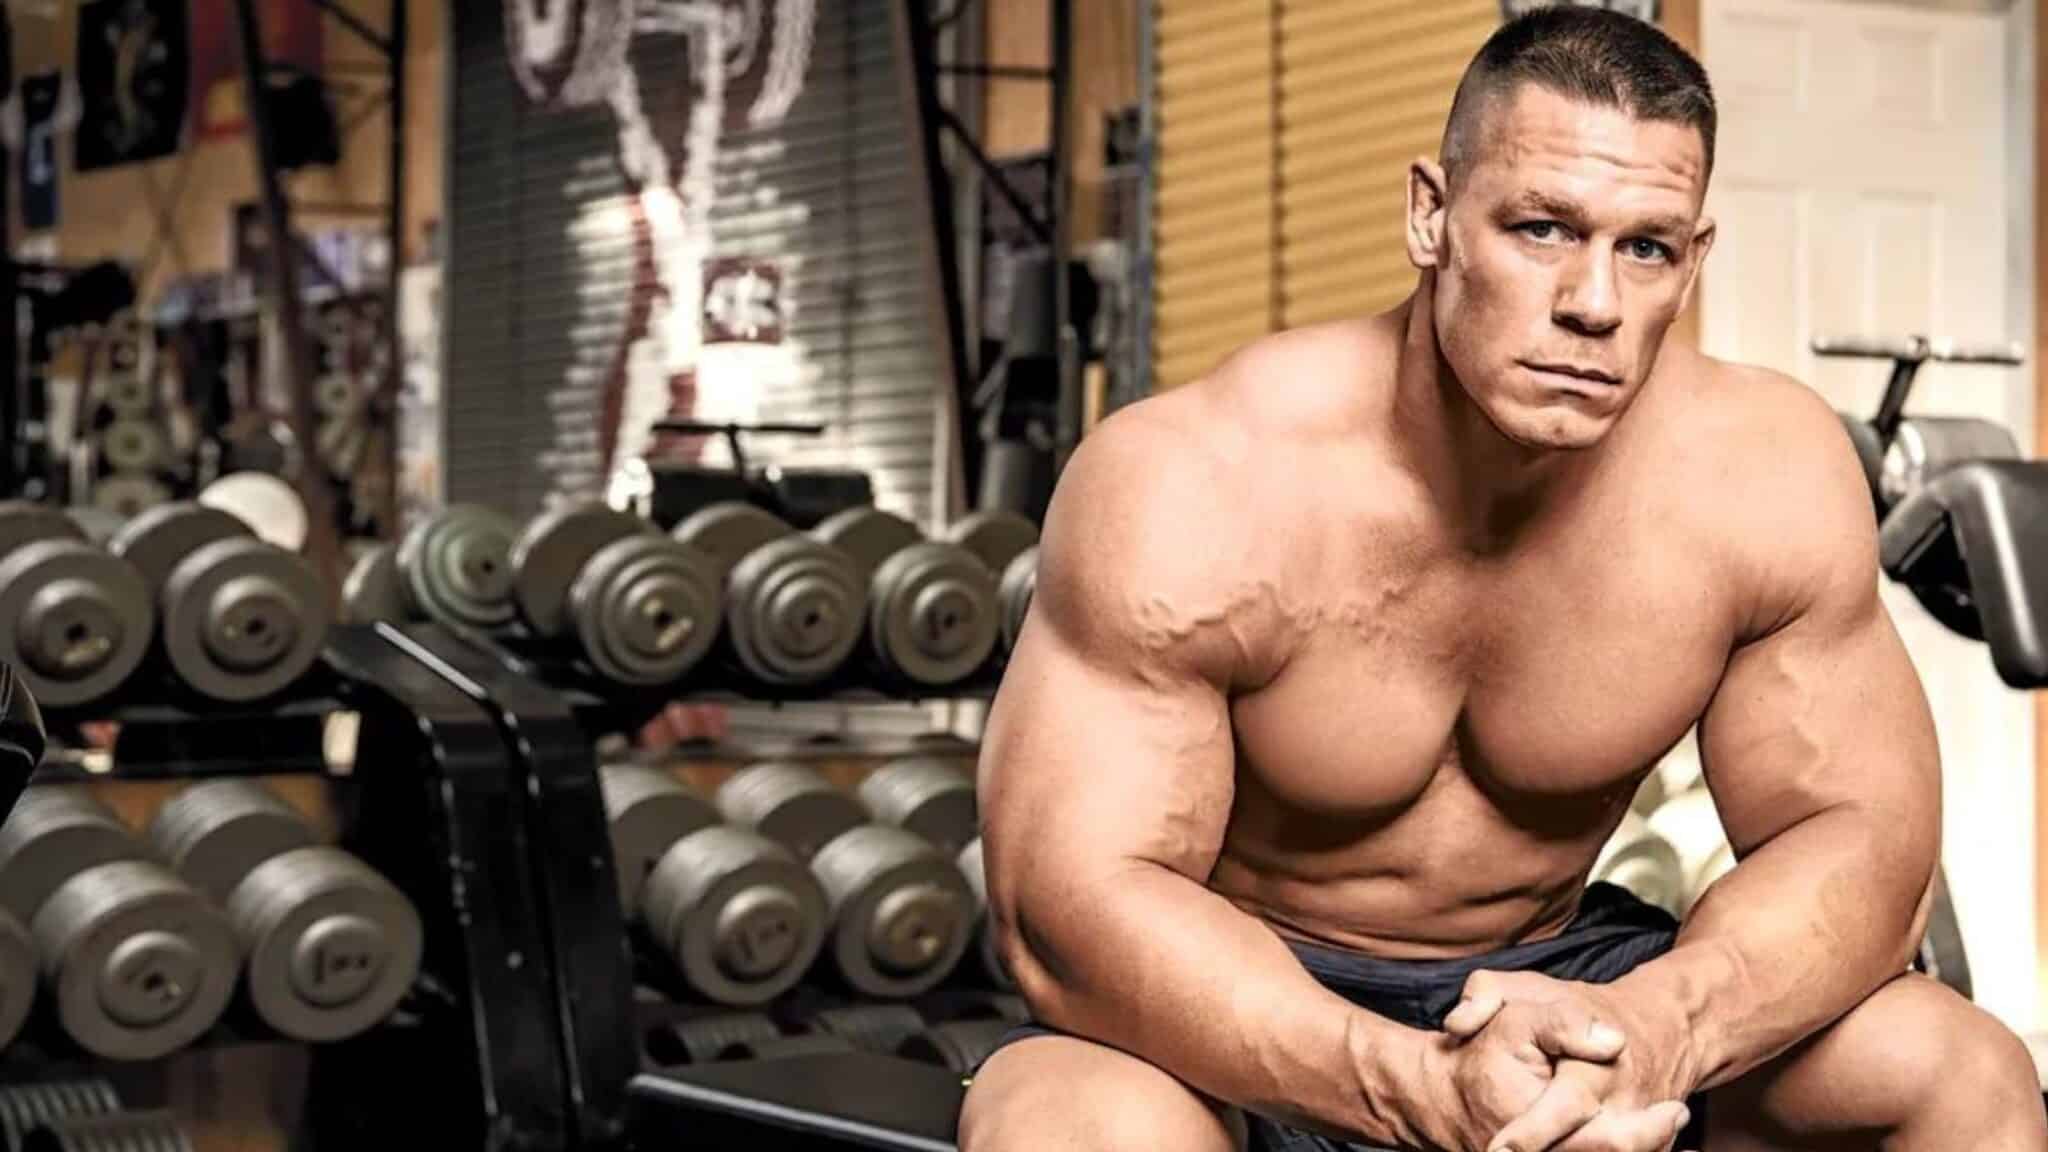 L'athlète John Cena torse nu, assis sur banc de musculation dans une salle de sport.